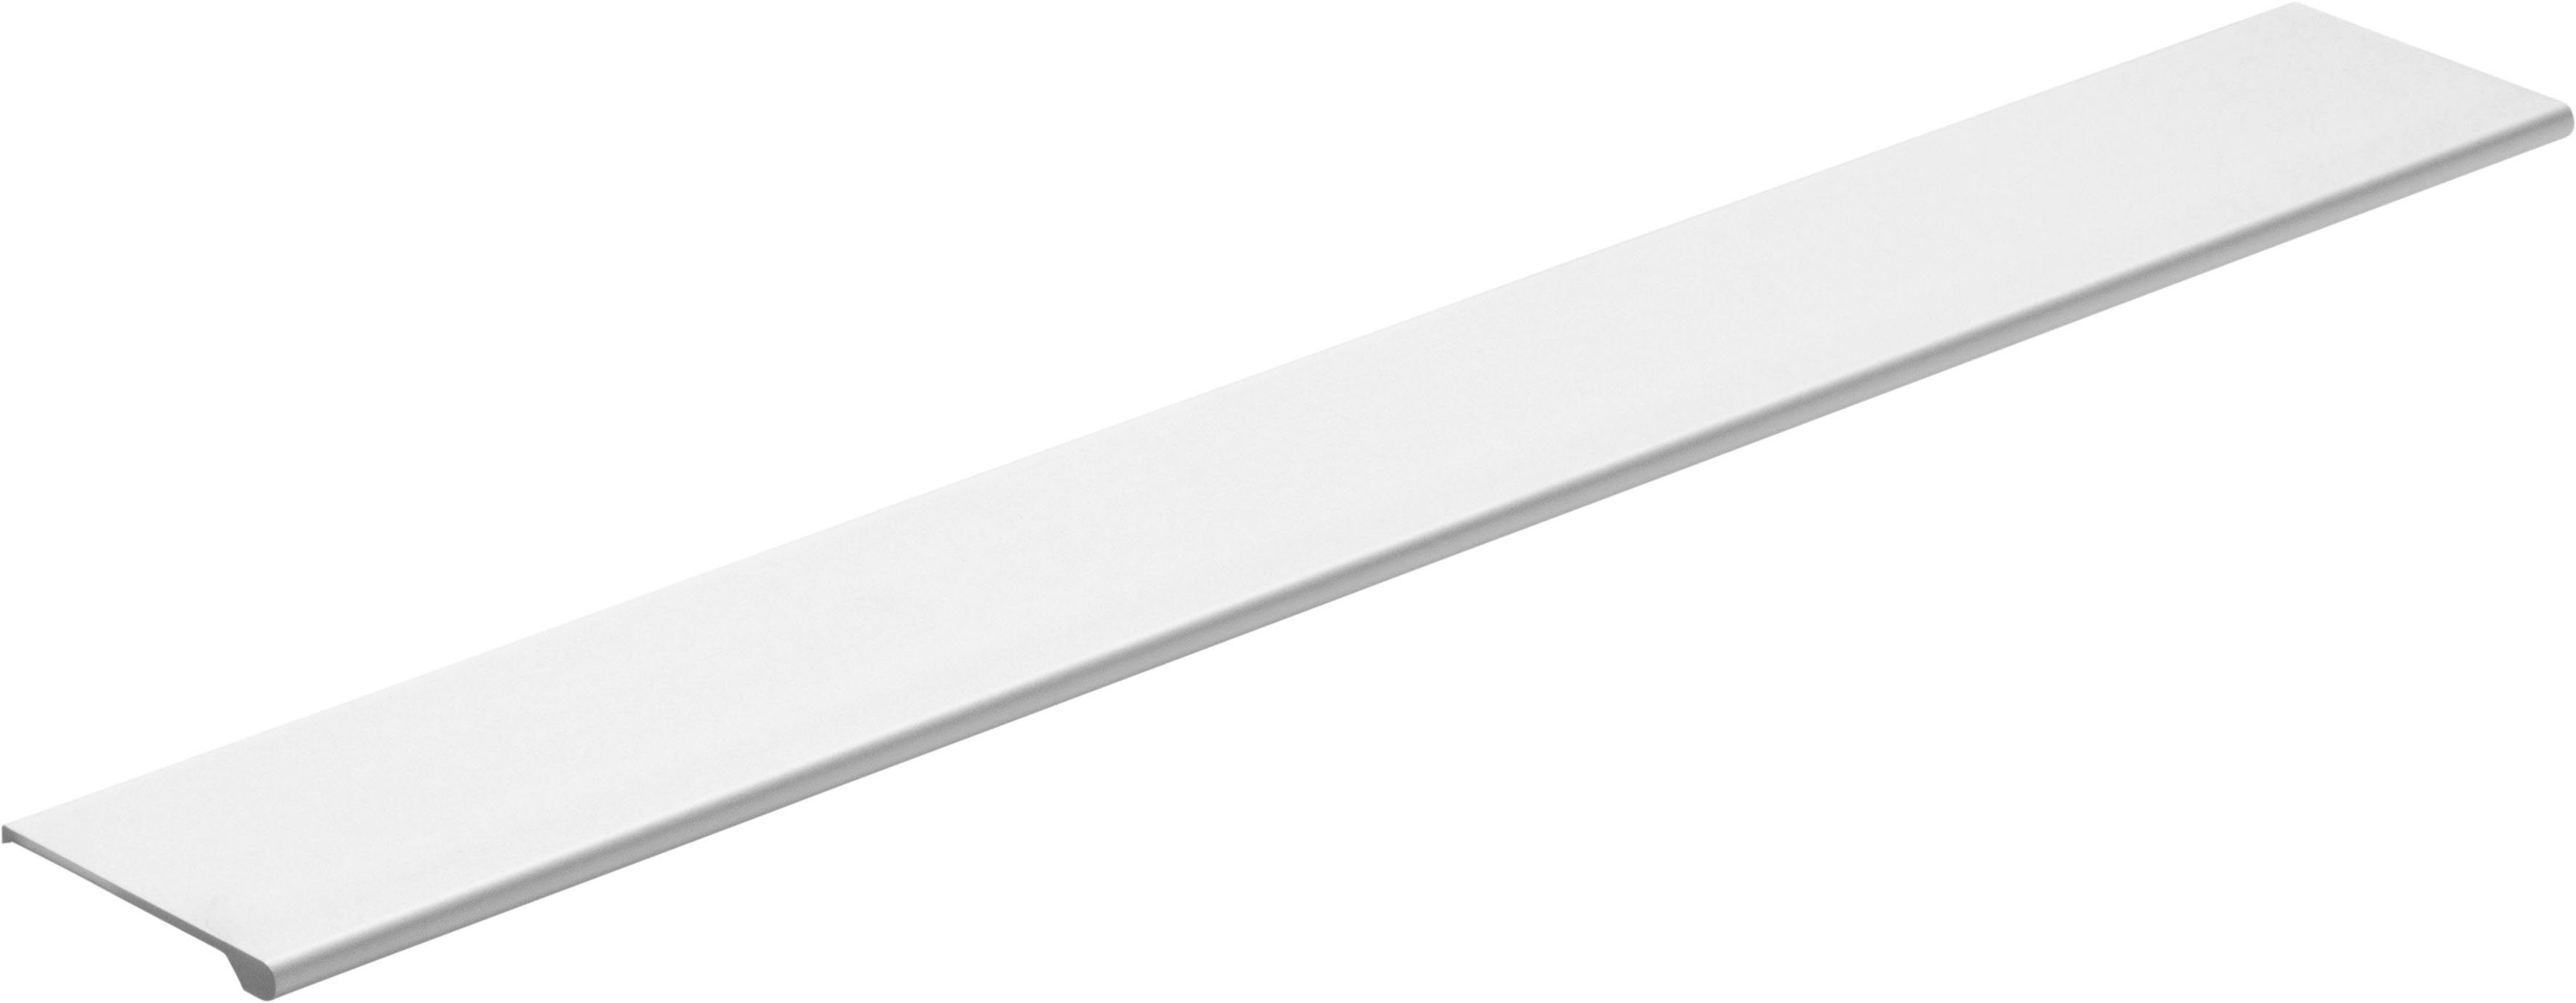 HELD MÖBEL Küchenzeile Hochglanz/weiß | weiß cm mit 280 weiß E-Geräten, Breite Brindisi